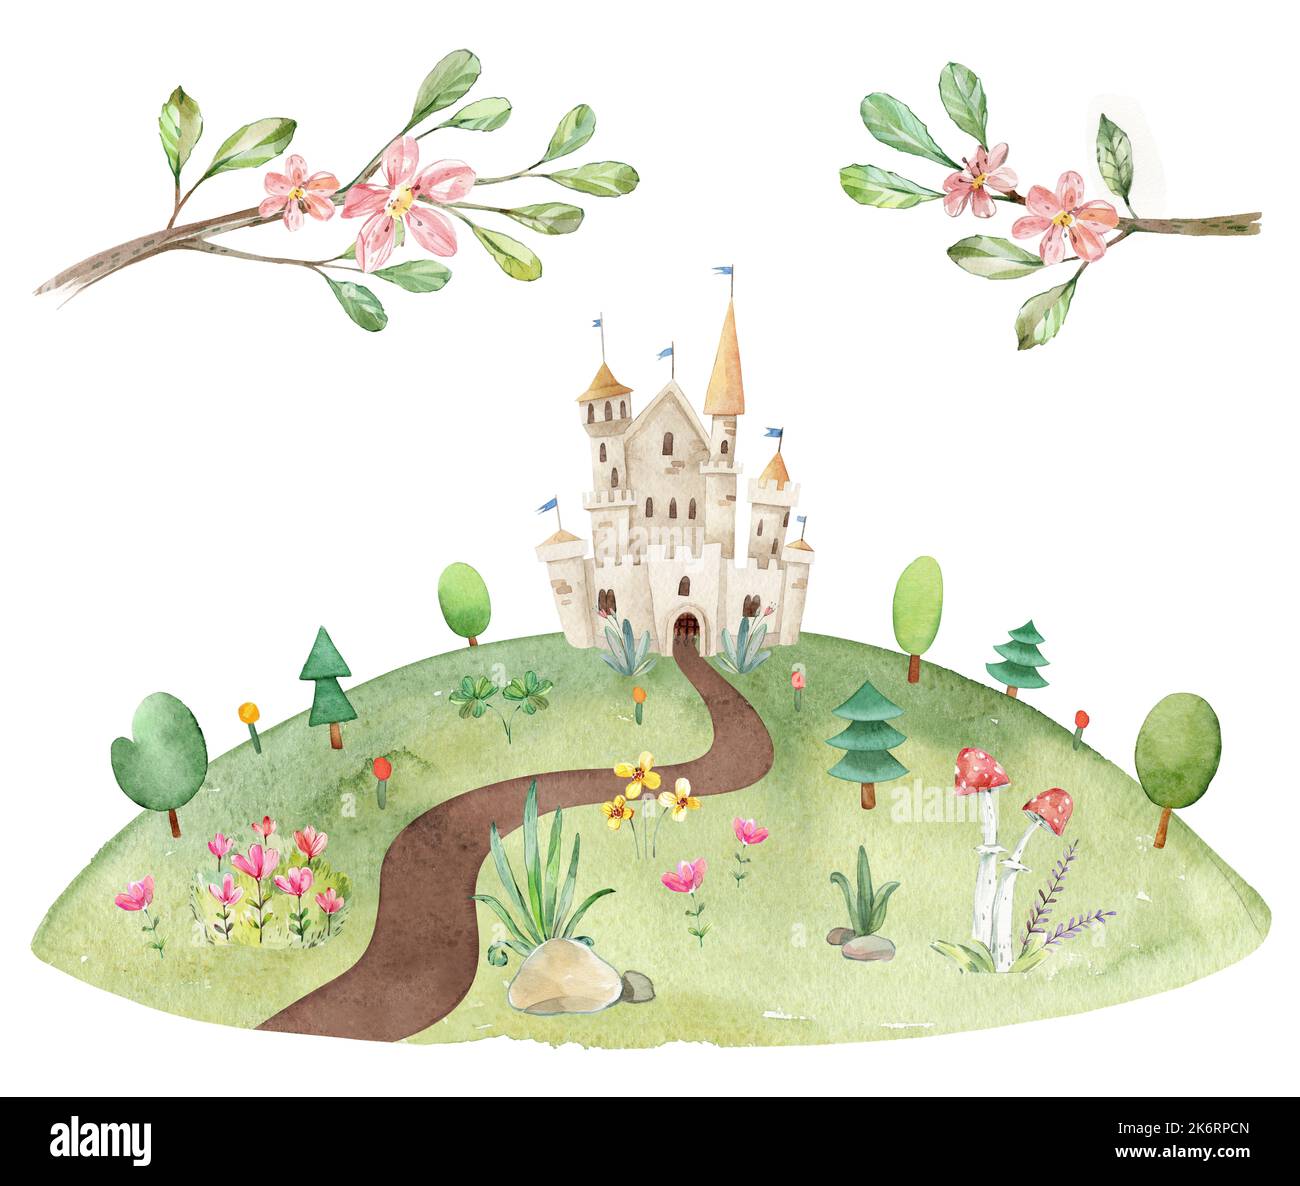 Aquarelle puérile illustration du paysage d'été prairie avec sentier de terre, château de fées, arbres, herbe verte, fleurs Banque D'Images